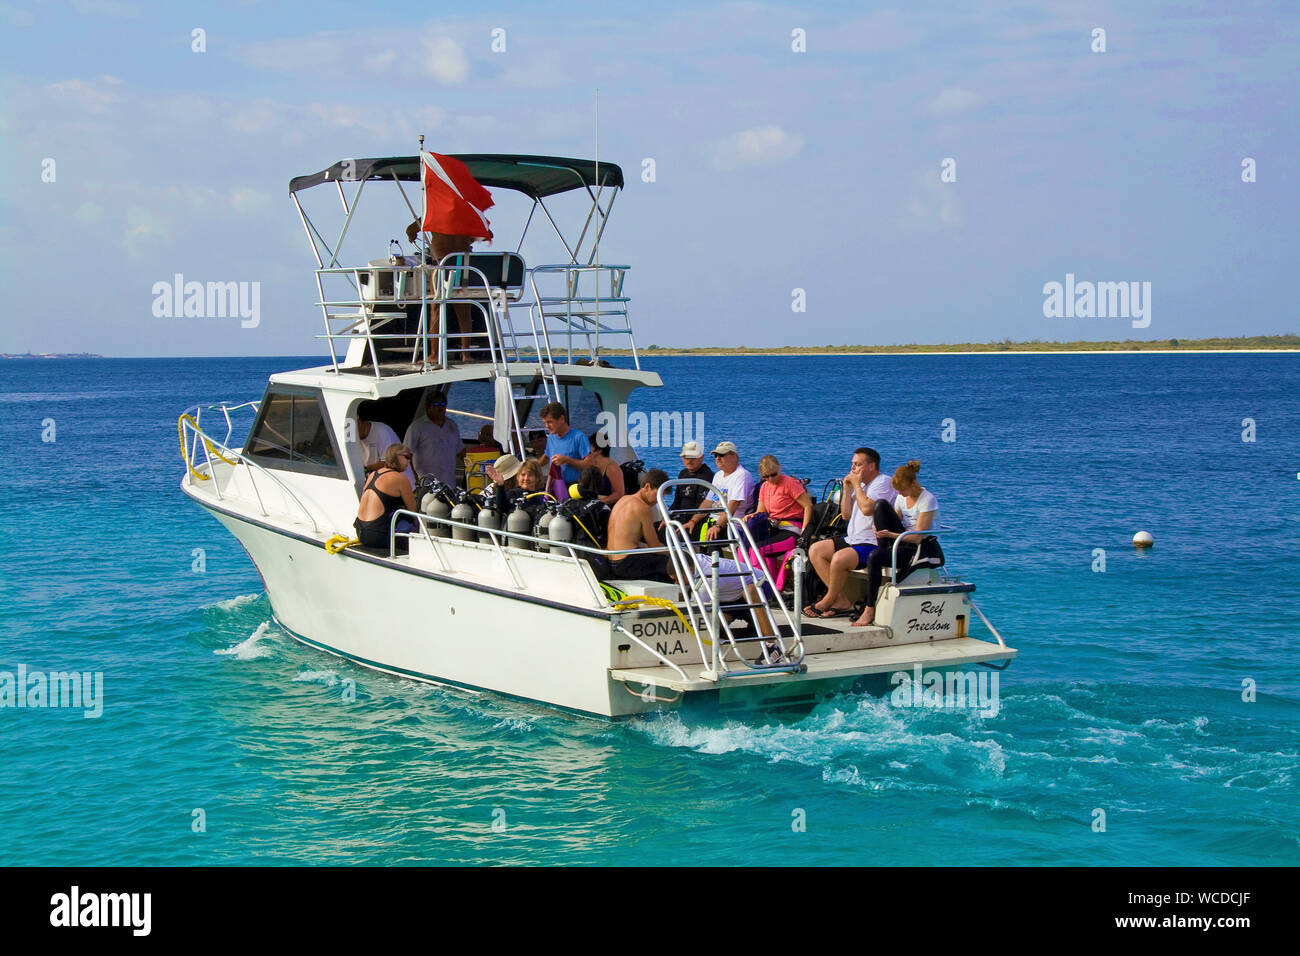 Dive vessel with scuba diver, boats trip to Little Bonaire, Captain Don's Habitat, Resort and Diving hotel, Kralendijk, Bonaire, Netherland Antilles Stock Photo